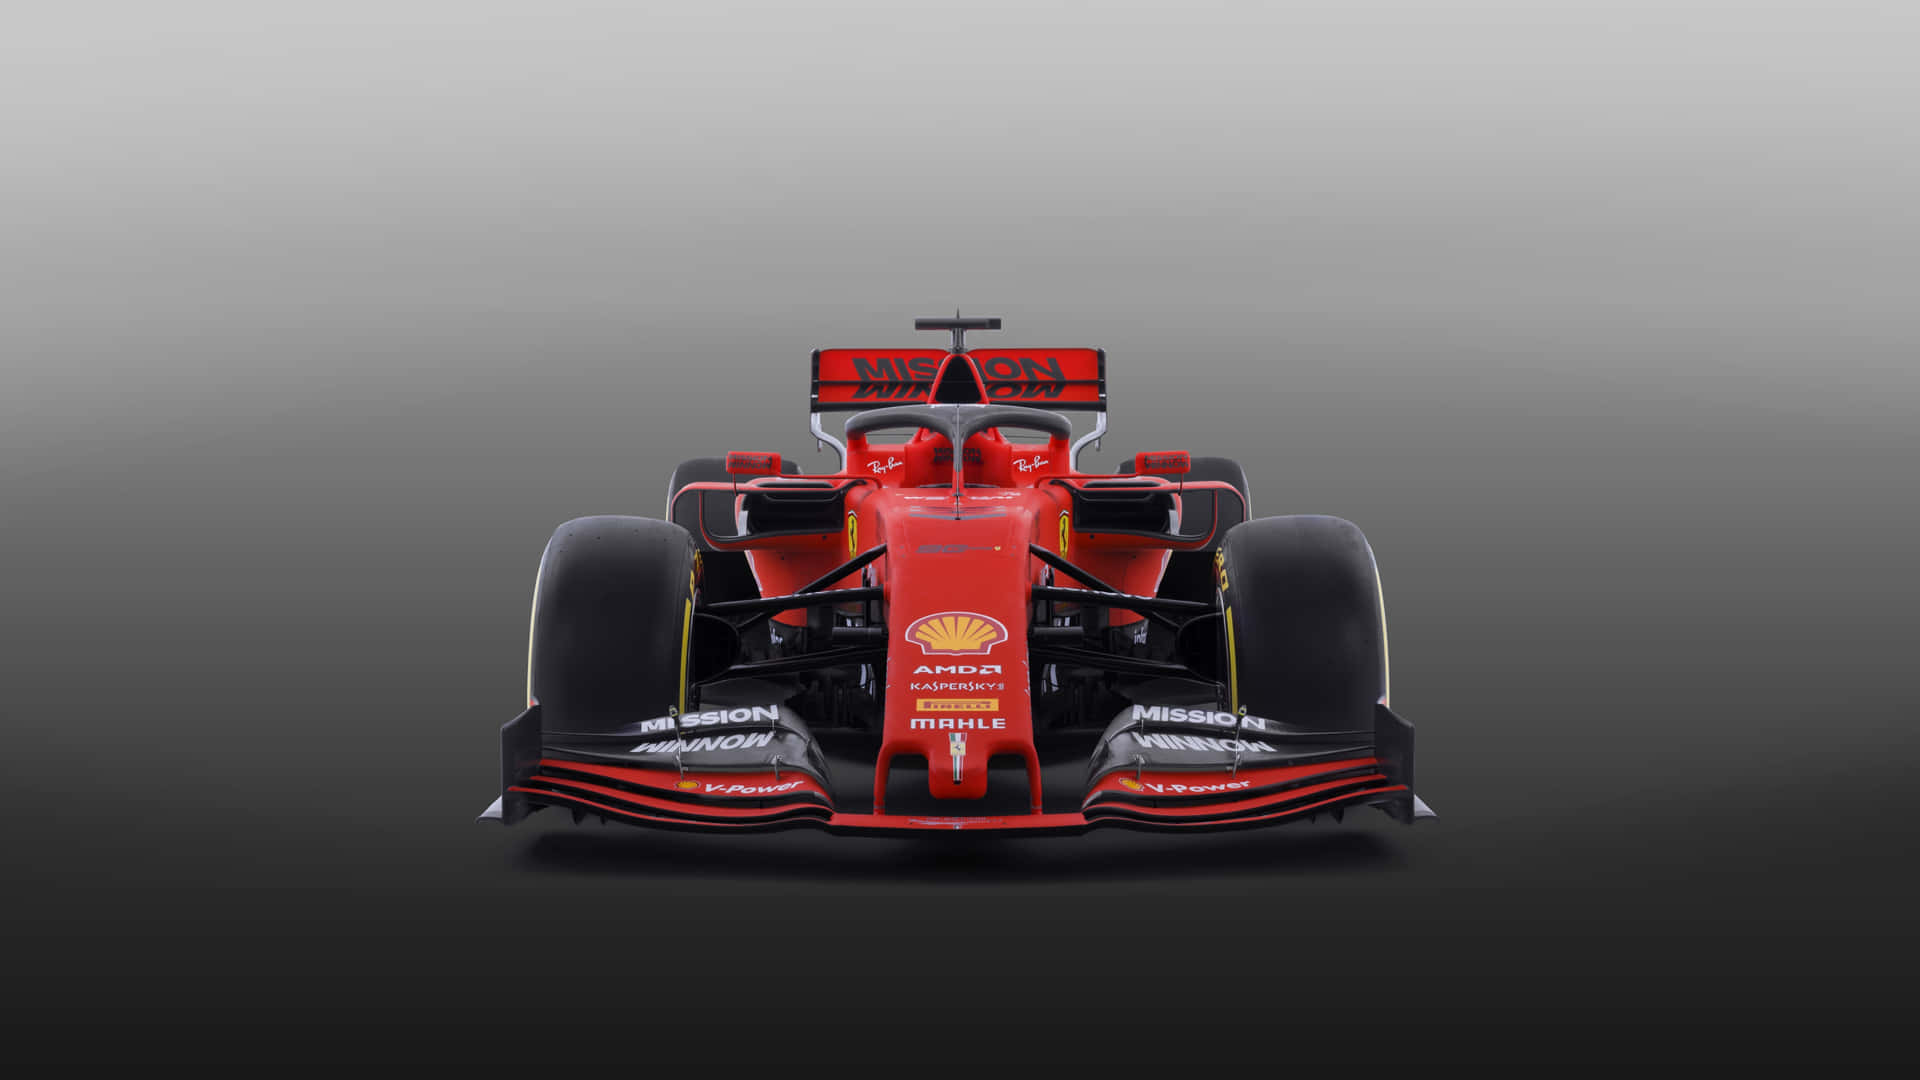 Ferrarif1 Auto In Rot Auf Einem Grauen Hintergrund Wallpaper